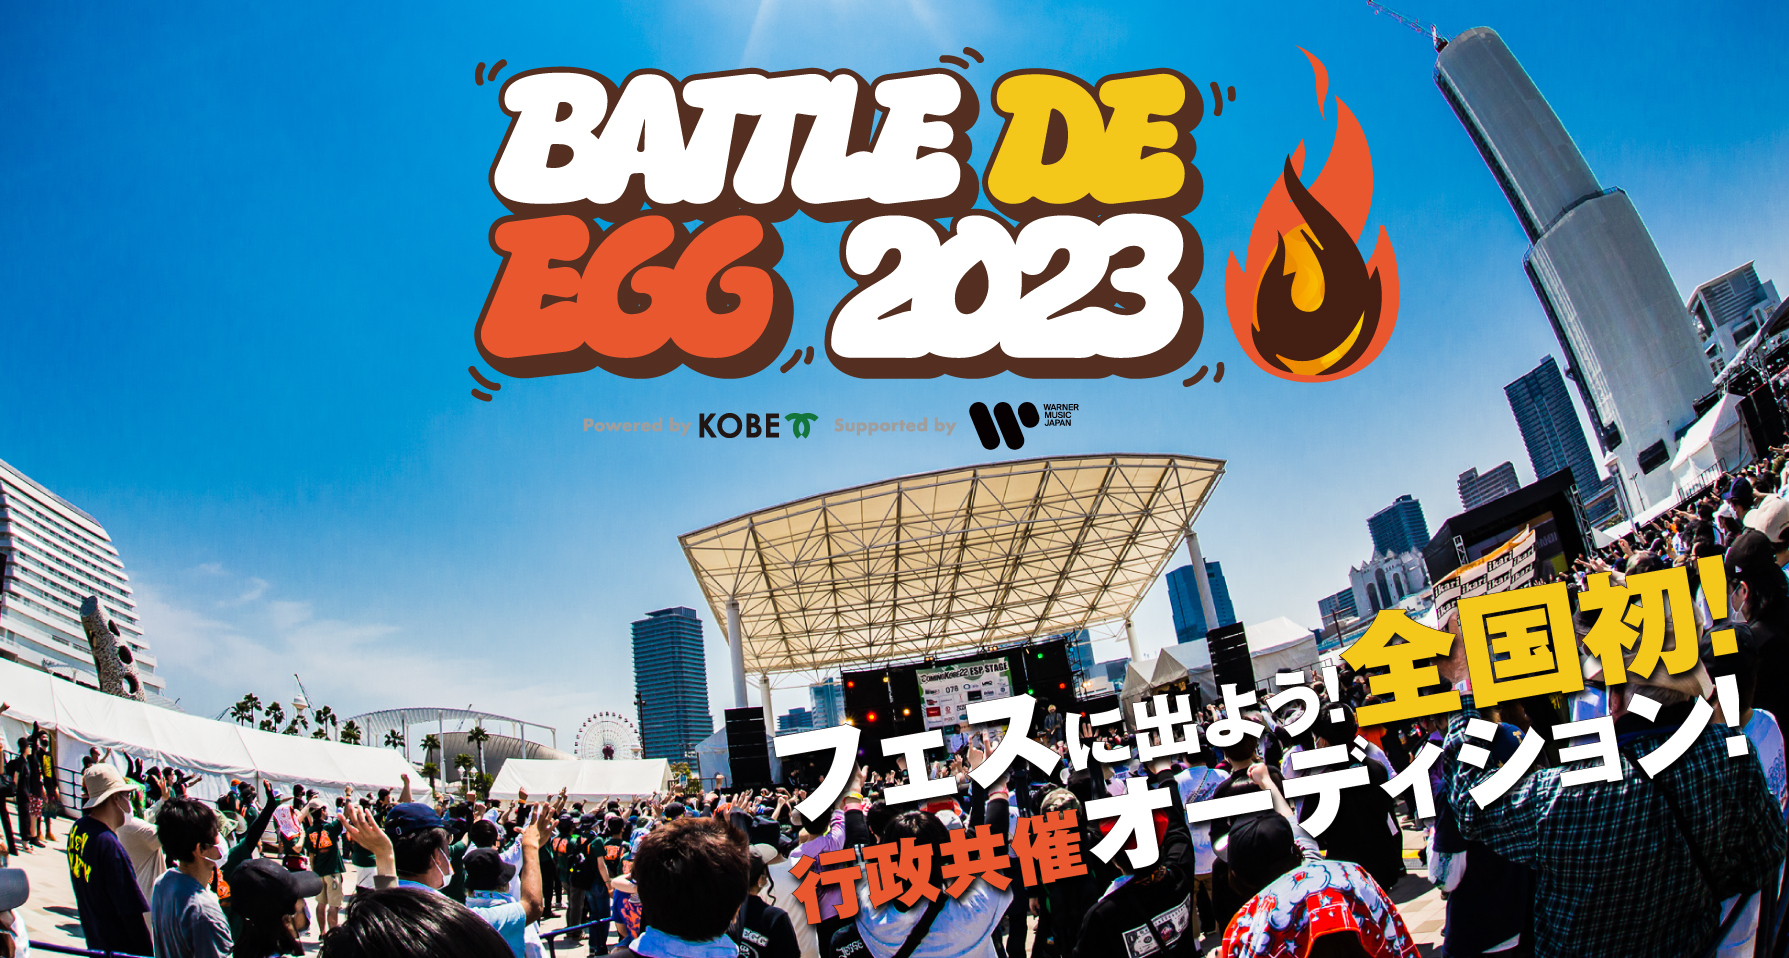 Battle-de-egg-2023-%e3%83%8f%e3%82%99%e3%83%8a%e3%83%bc%e7%94%bb%e5%83%8f-3_3